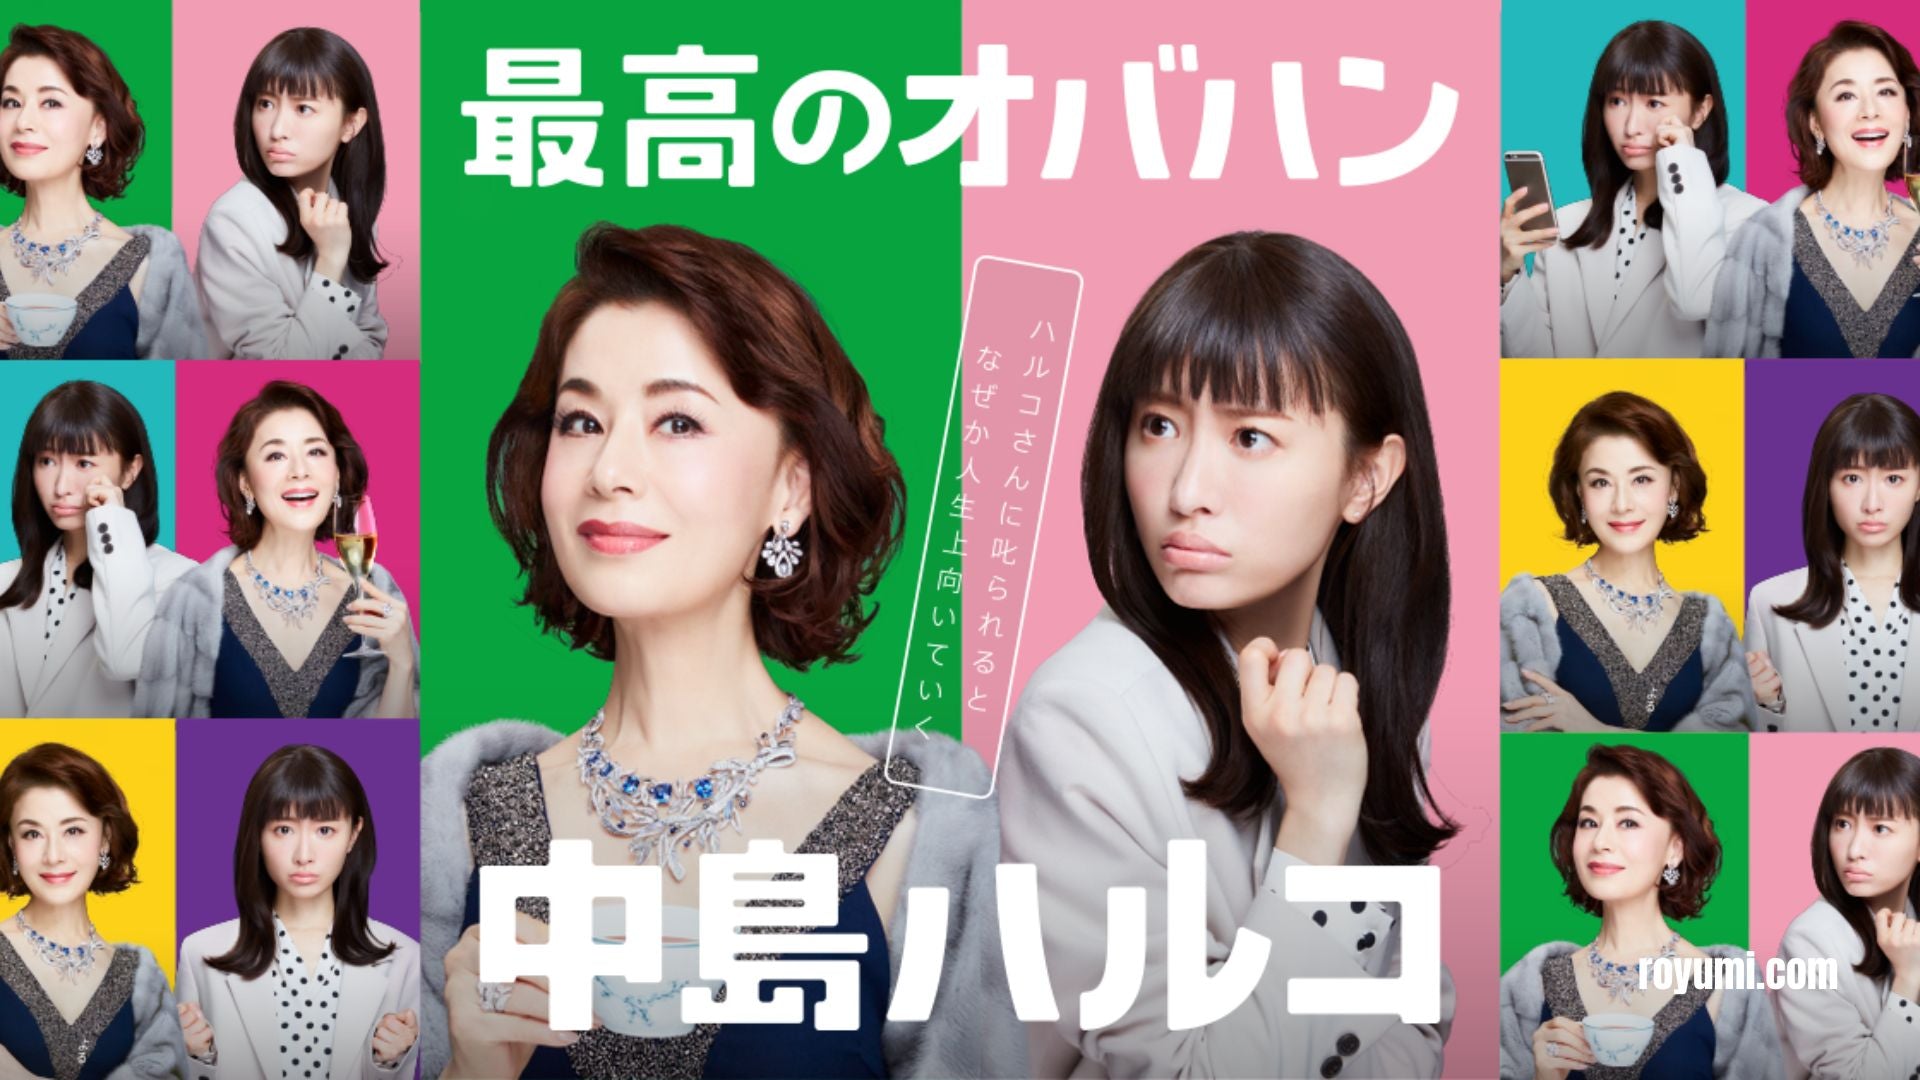 The Great Haruko: Entertaining Witty Delight on Netflix